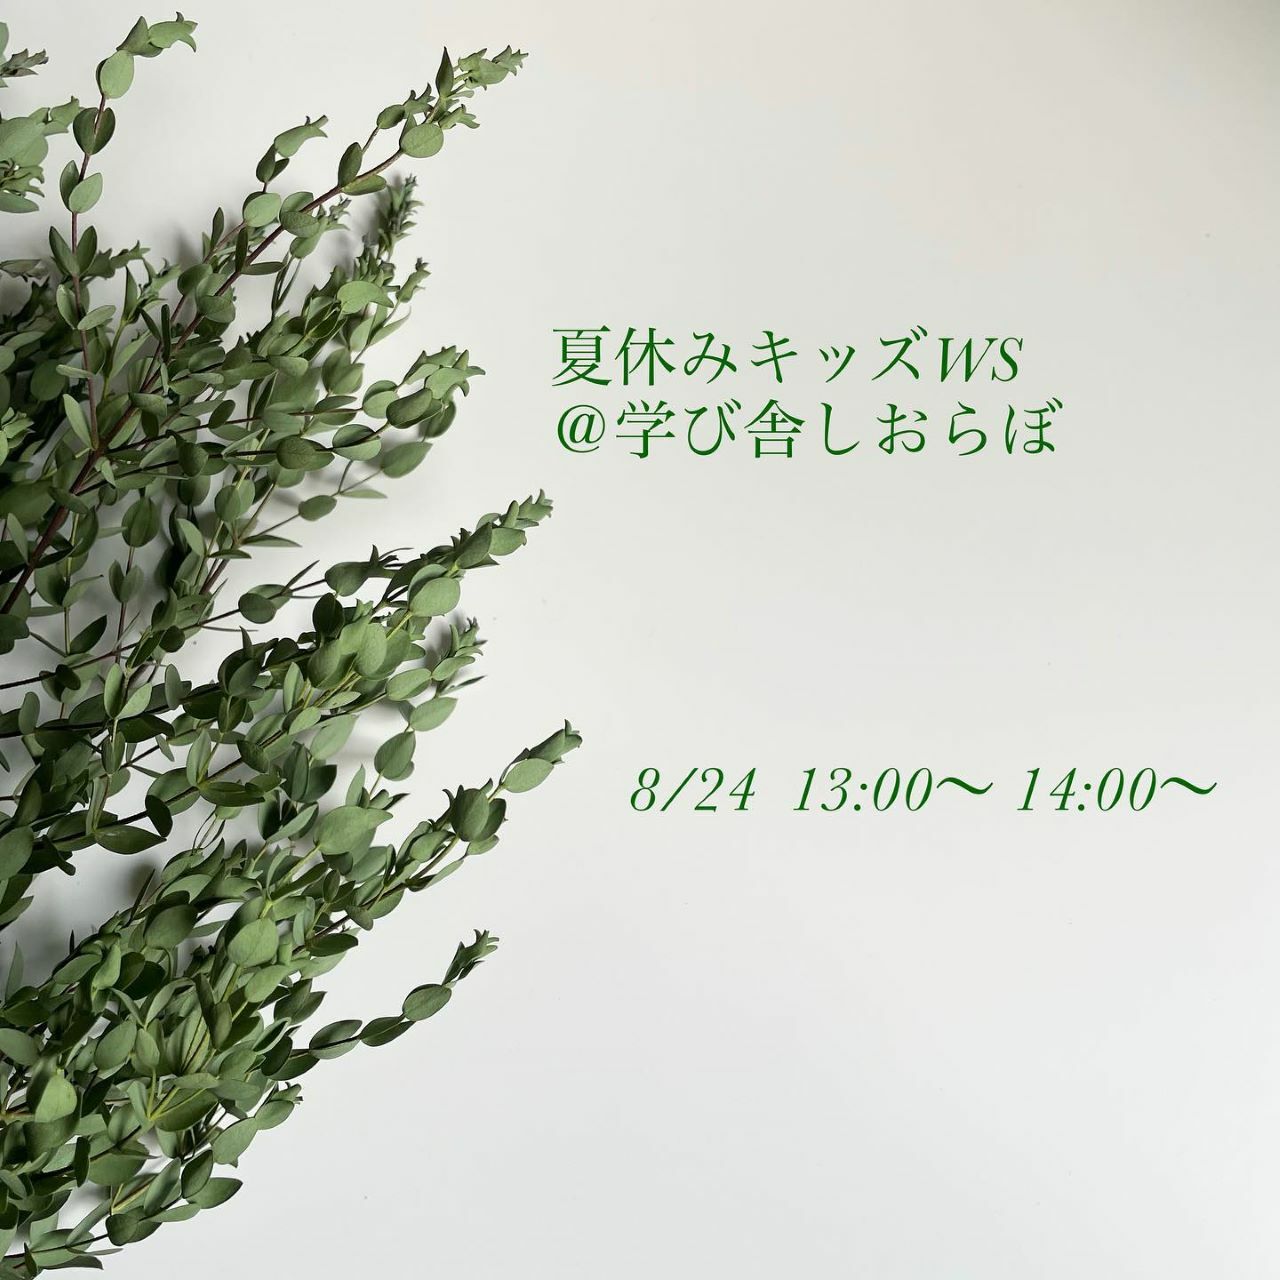 ※画像提供：Dryflower Chiyocotton(ちょこっとん) Fukuoka